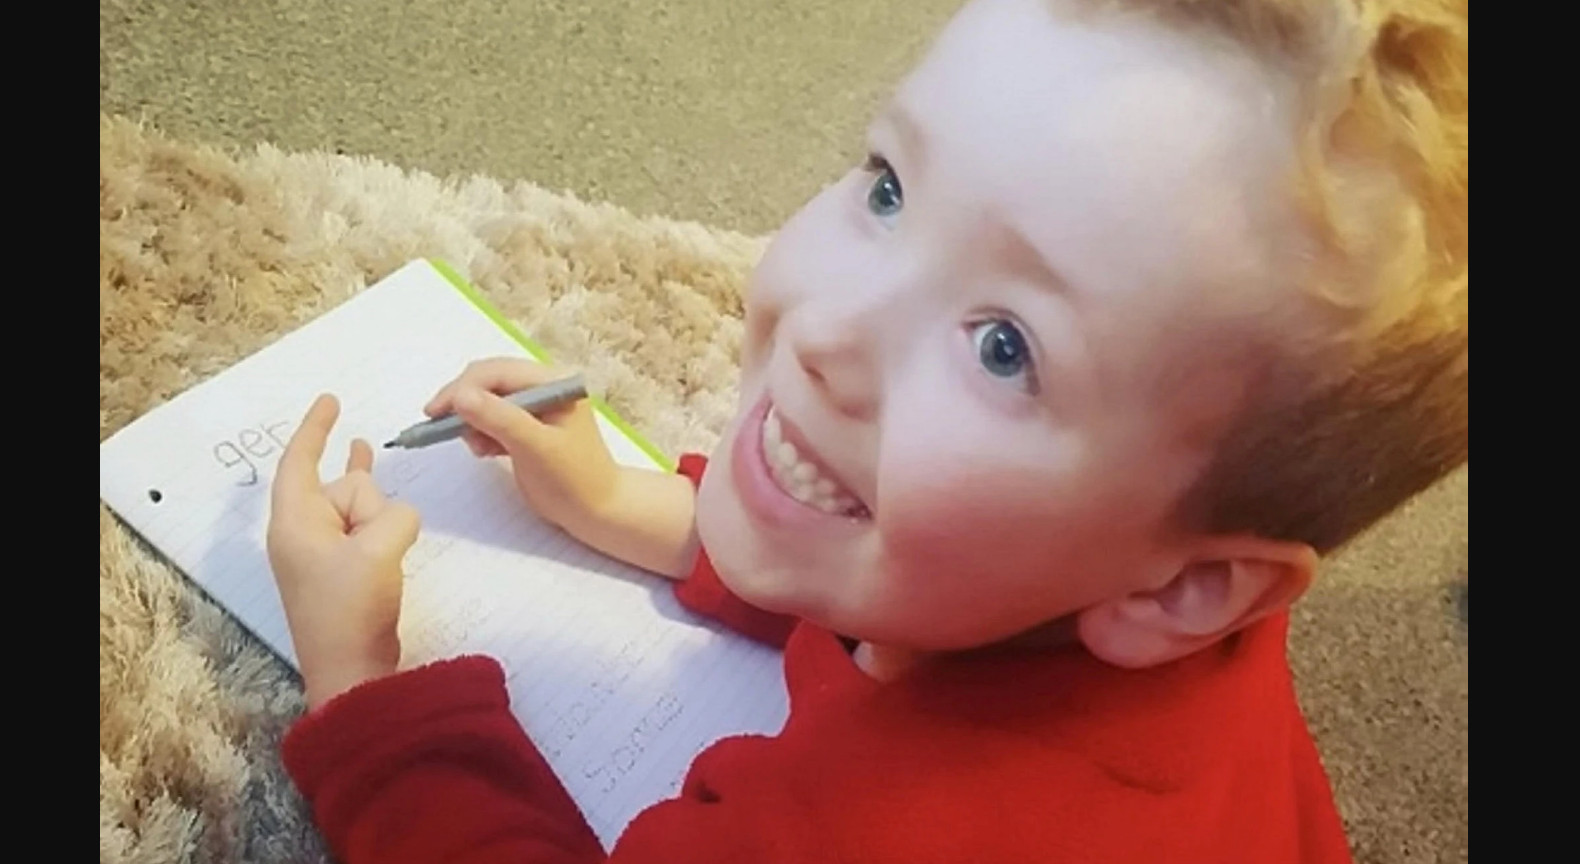 6χρονος Αγγλία: Σοκ από τον θάνατο του μικρού Άρθουρ – Νέα στοιχεία φρίκης για τους γονείς